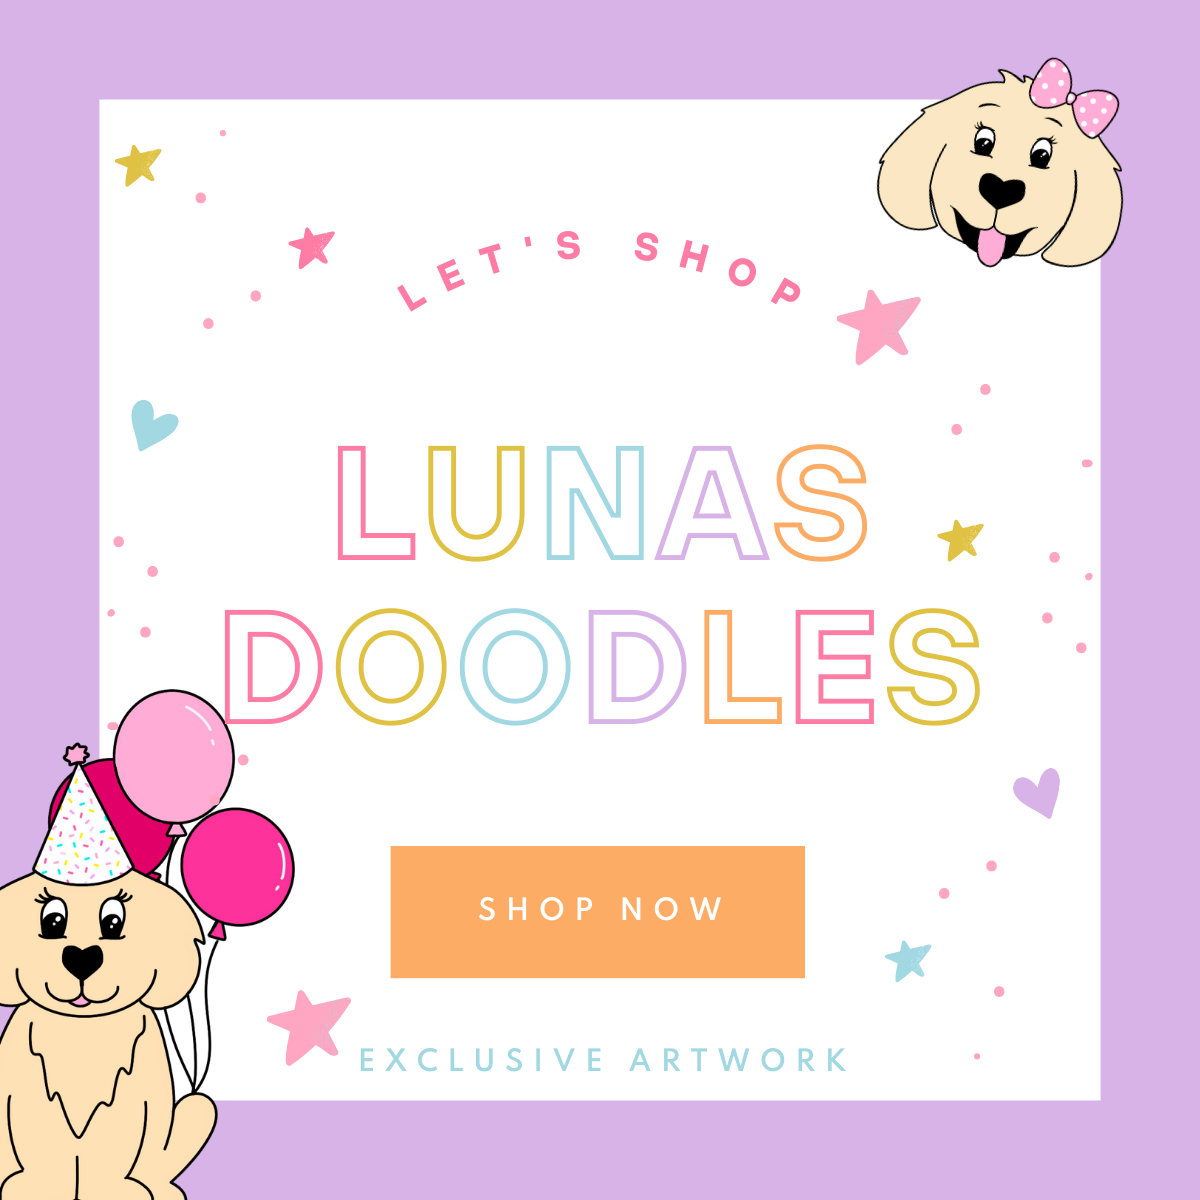 Luna's Doodles